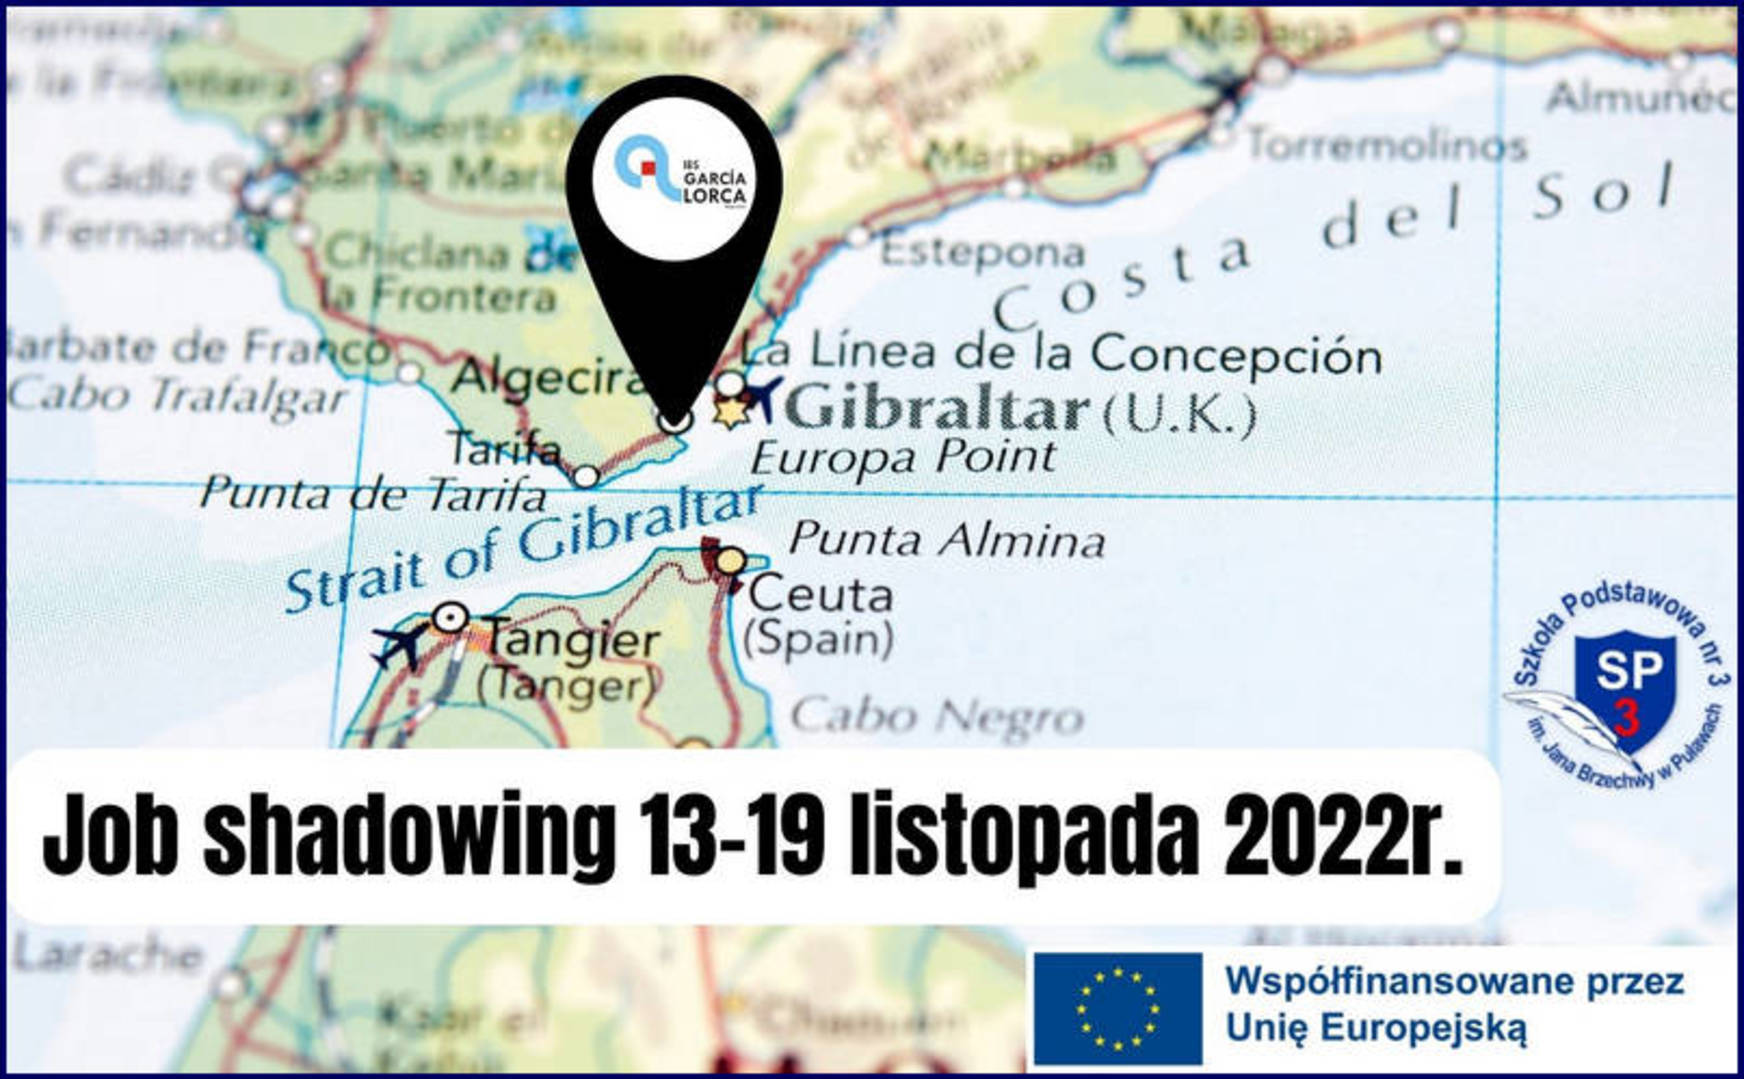 Mapa z zaznaczoną miejscowością Algeciras w Hiszpanii. Na dole napis: Job shadowing 13-19 listopada 2022r. i logo SP3. Po prawej stronie adnotacja: Współfinansowane przez Unię Europejską